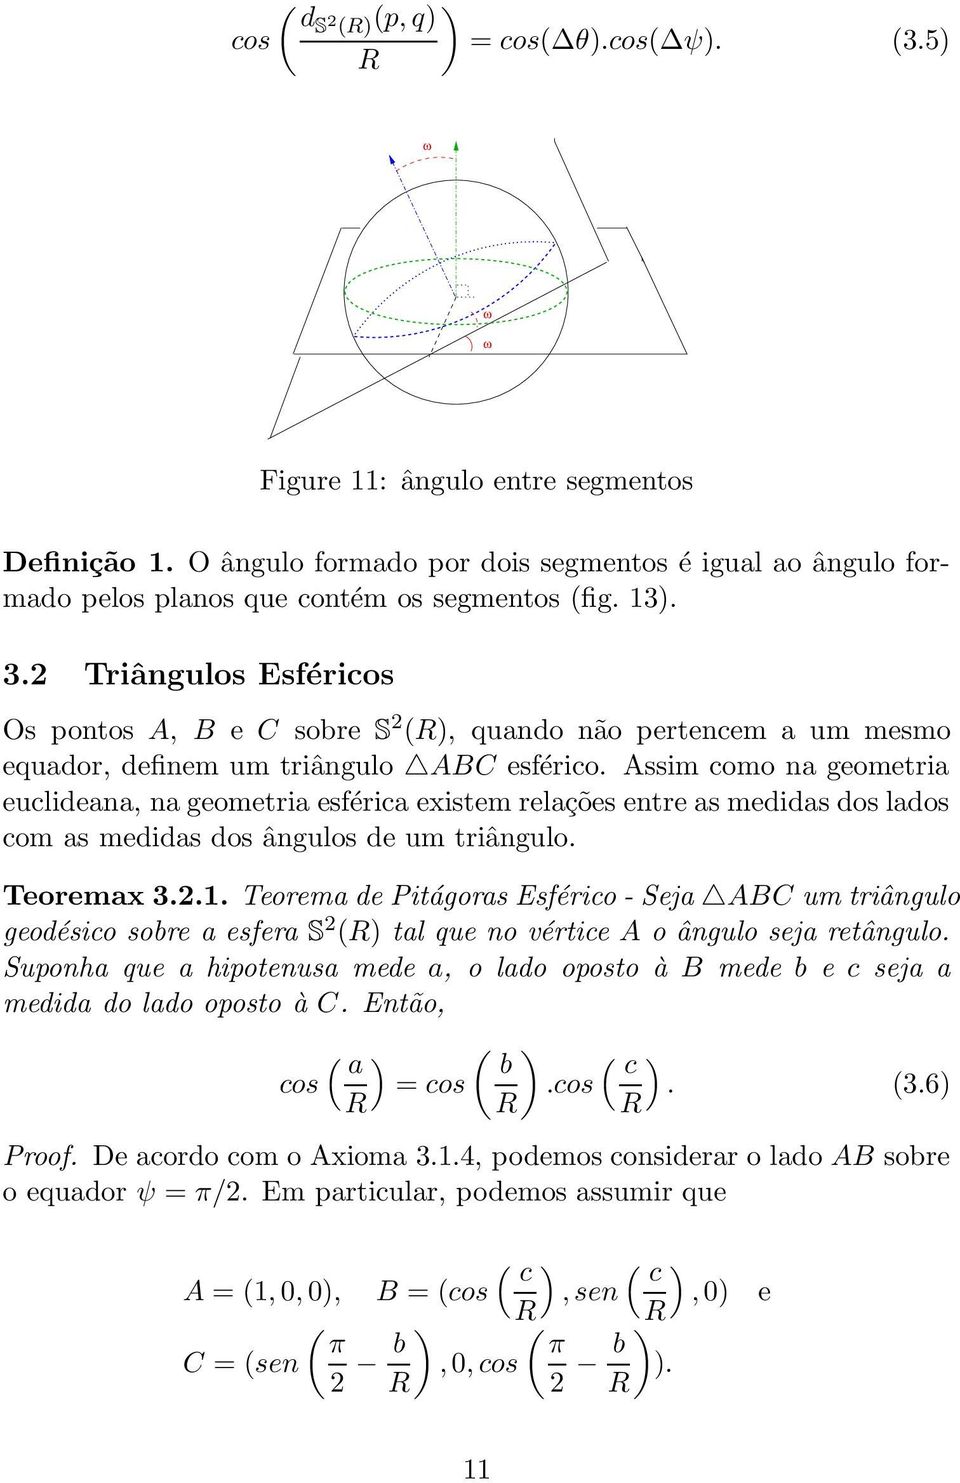 Teorem de Pitágors Esfério - Sej ABC um triângulo geodésio sore esfer S 2 tl que no vértie A o ângulo sej retângulo. Suponh que hipotenus mede, o ldo oposto à B mede e sej medid do ldo oposto à C.